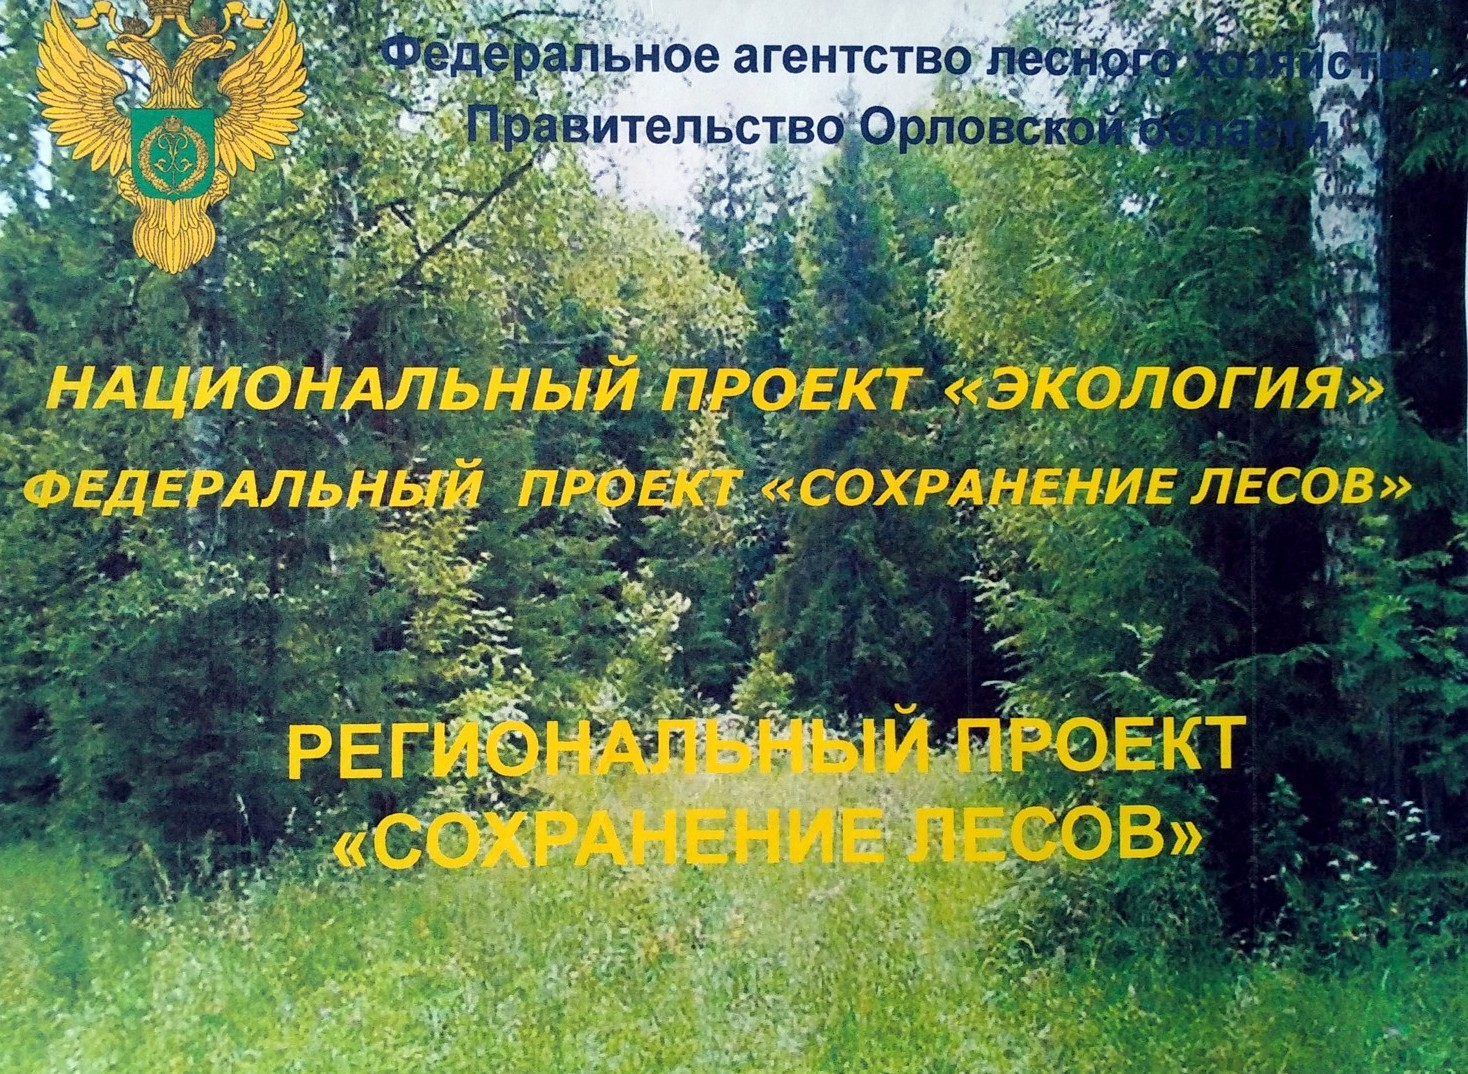 Подписано соглашение о реализации регионального проекта «Сохранение лесов» на территории Орловской области - фото 1